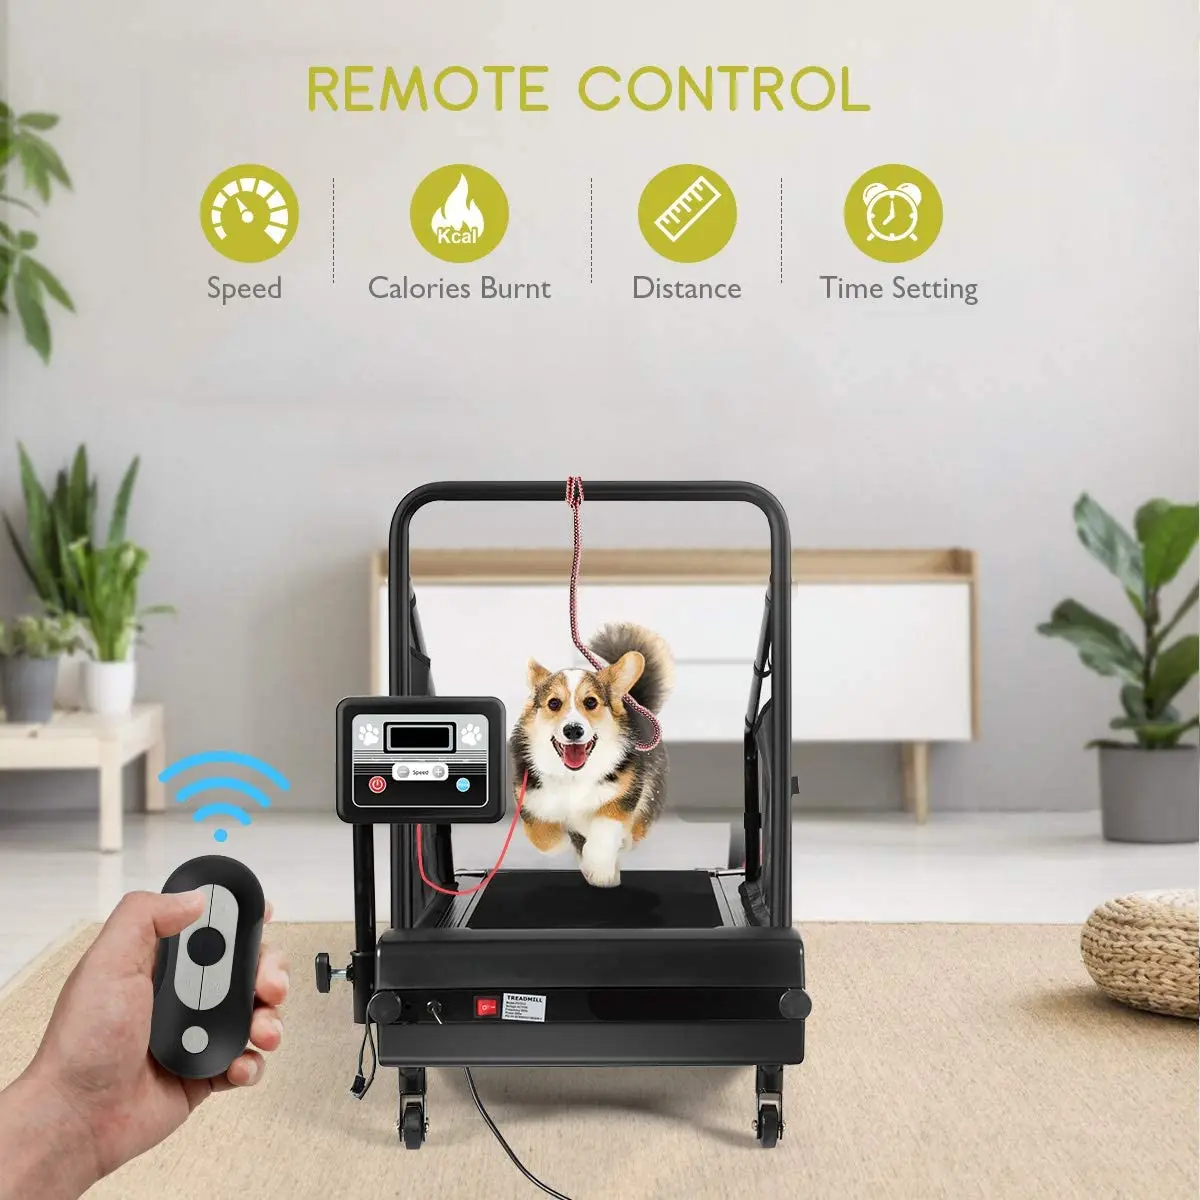 Dog Treadmill Small Dogs - Dog Treadmill for Medium Dogs - Dog